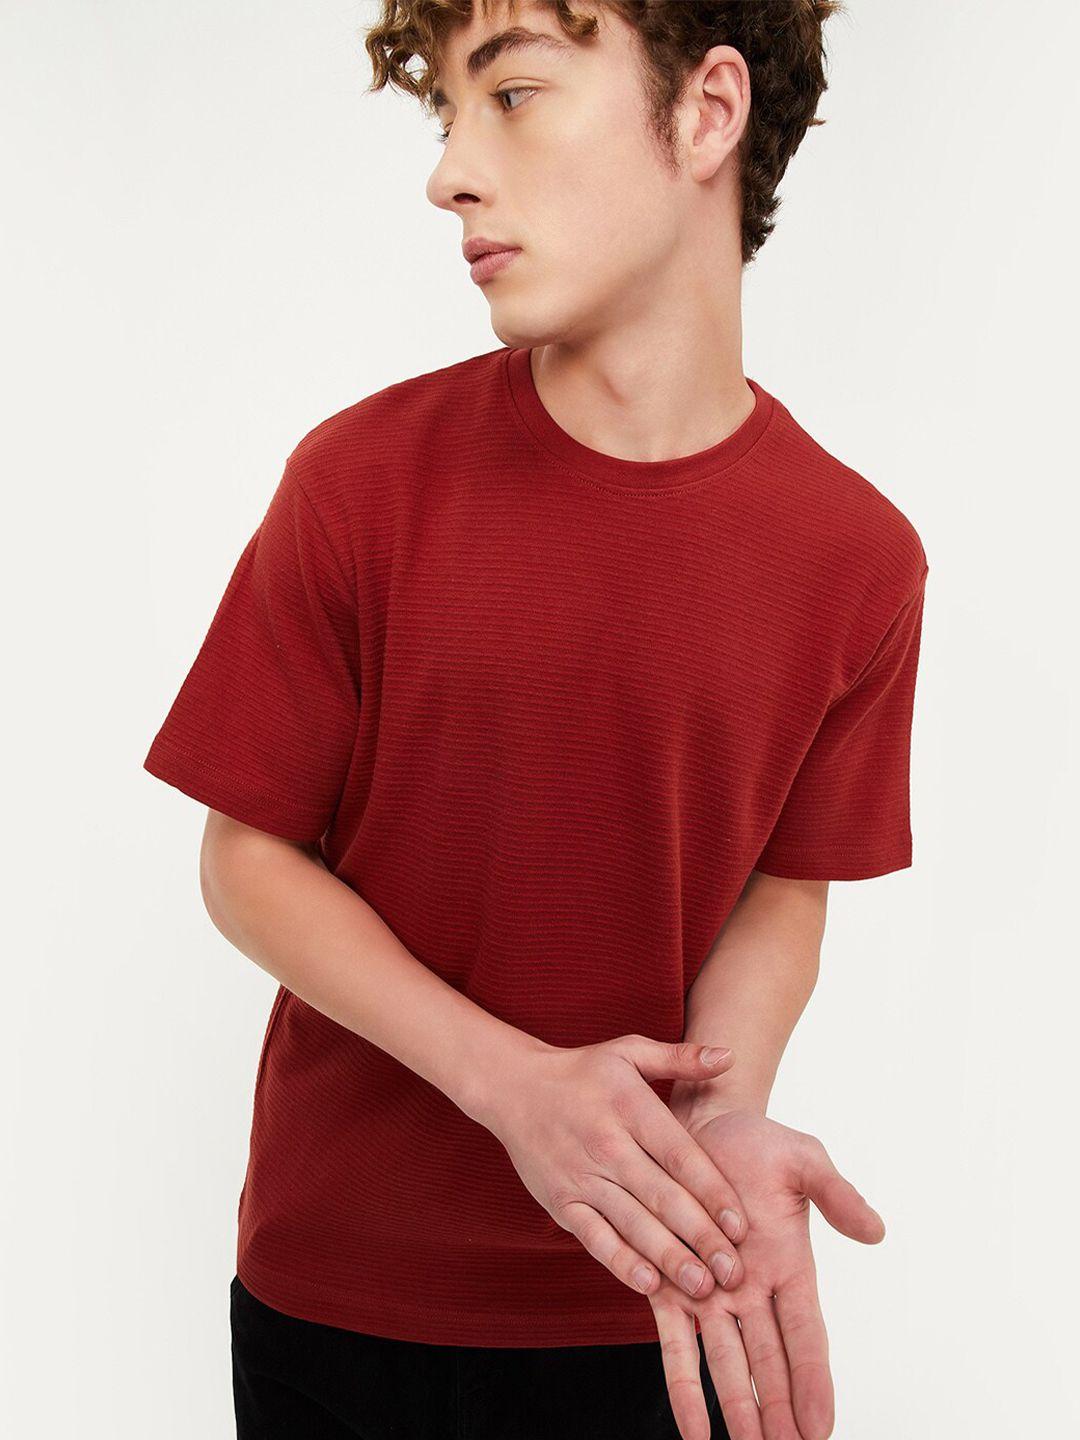 max-men-red-v-neck-pockets-t-shirt